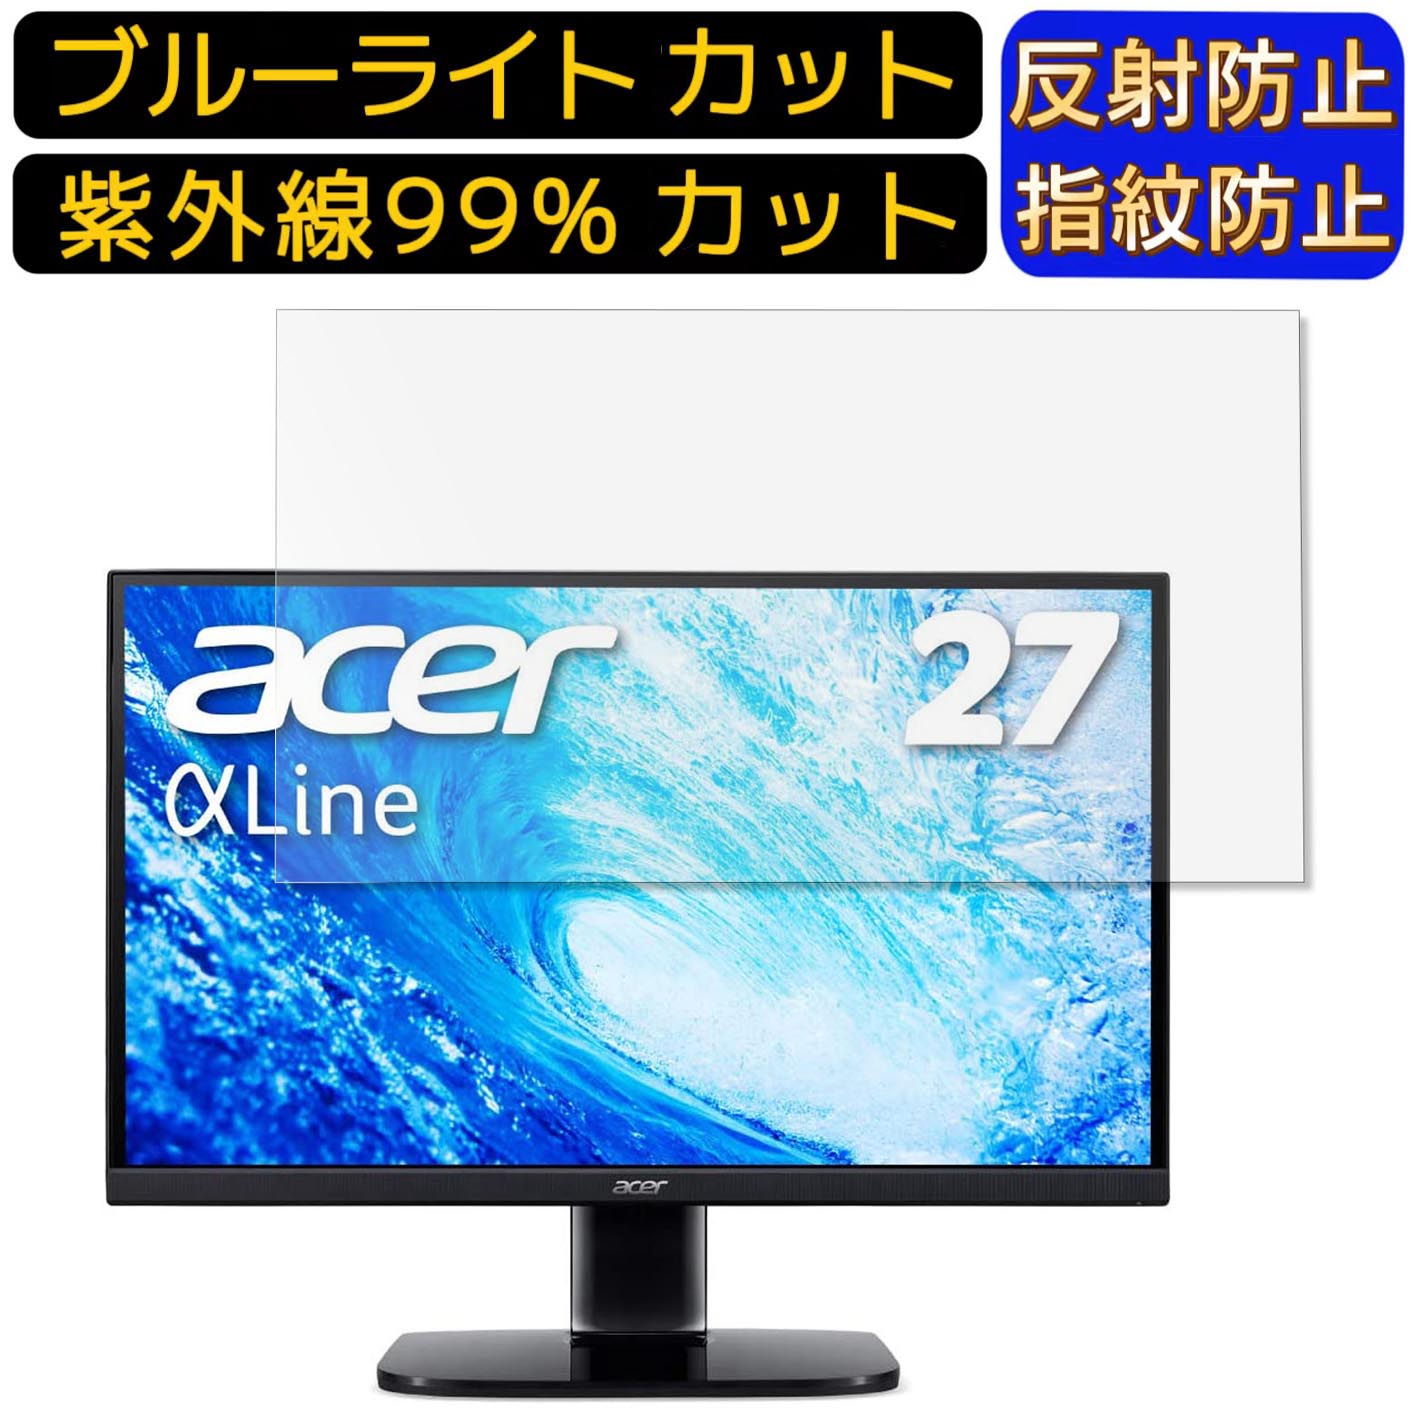 【ポイント2倍】Acer AlphaLine KA272Abmiix